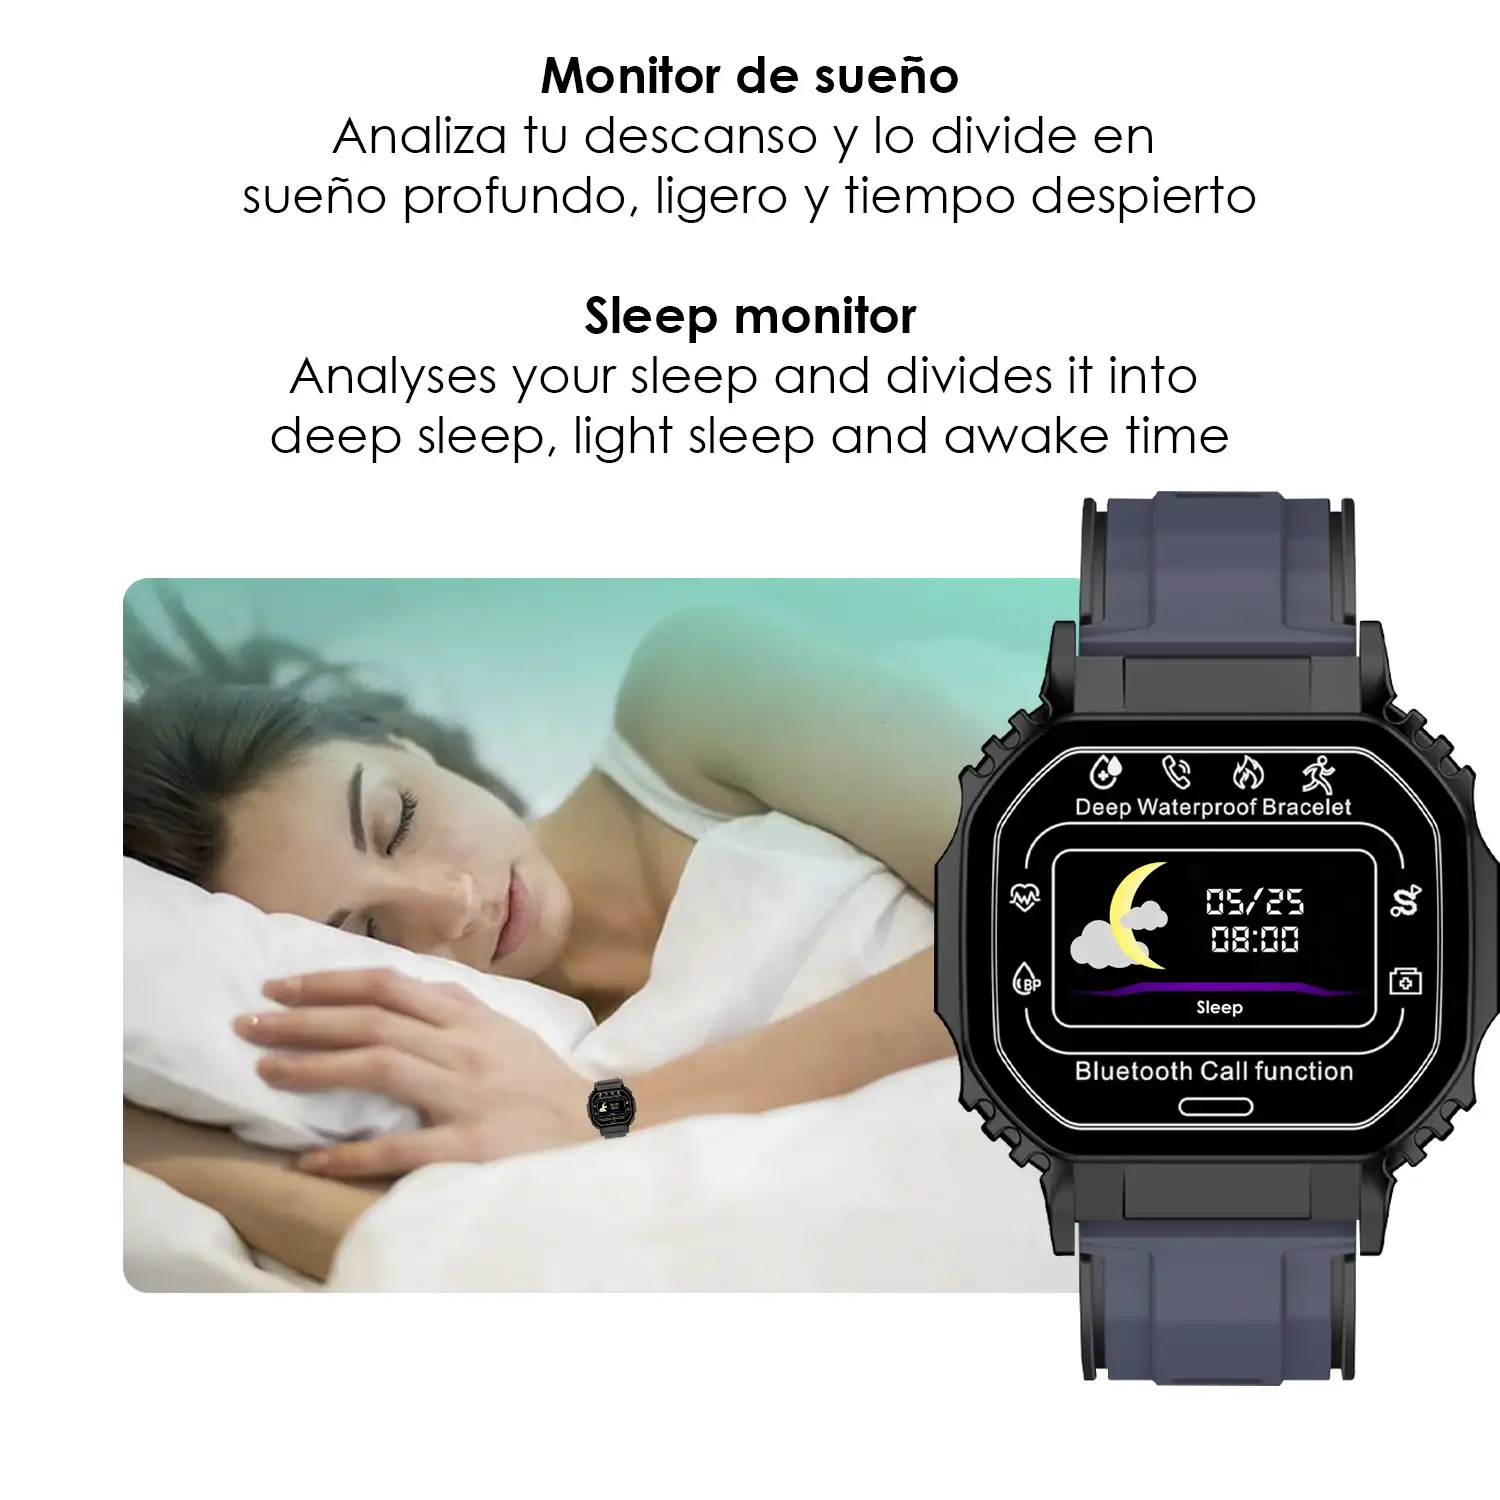 Smartwatch B2 sumergible con monitor cardíaco, O2 en sangre y tensión.